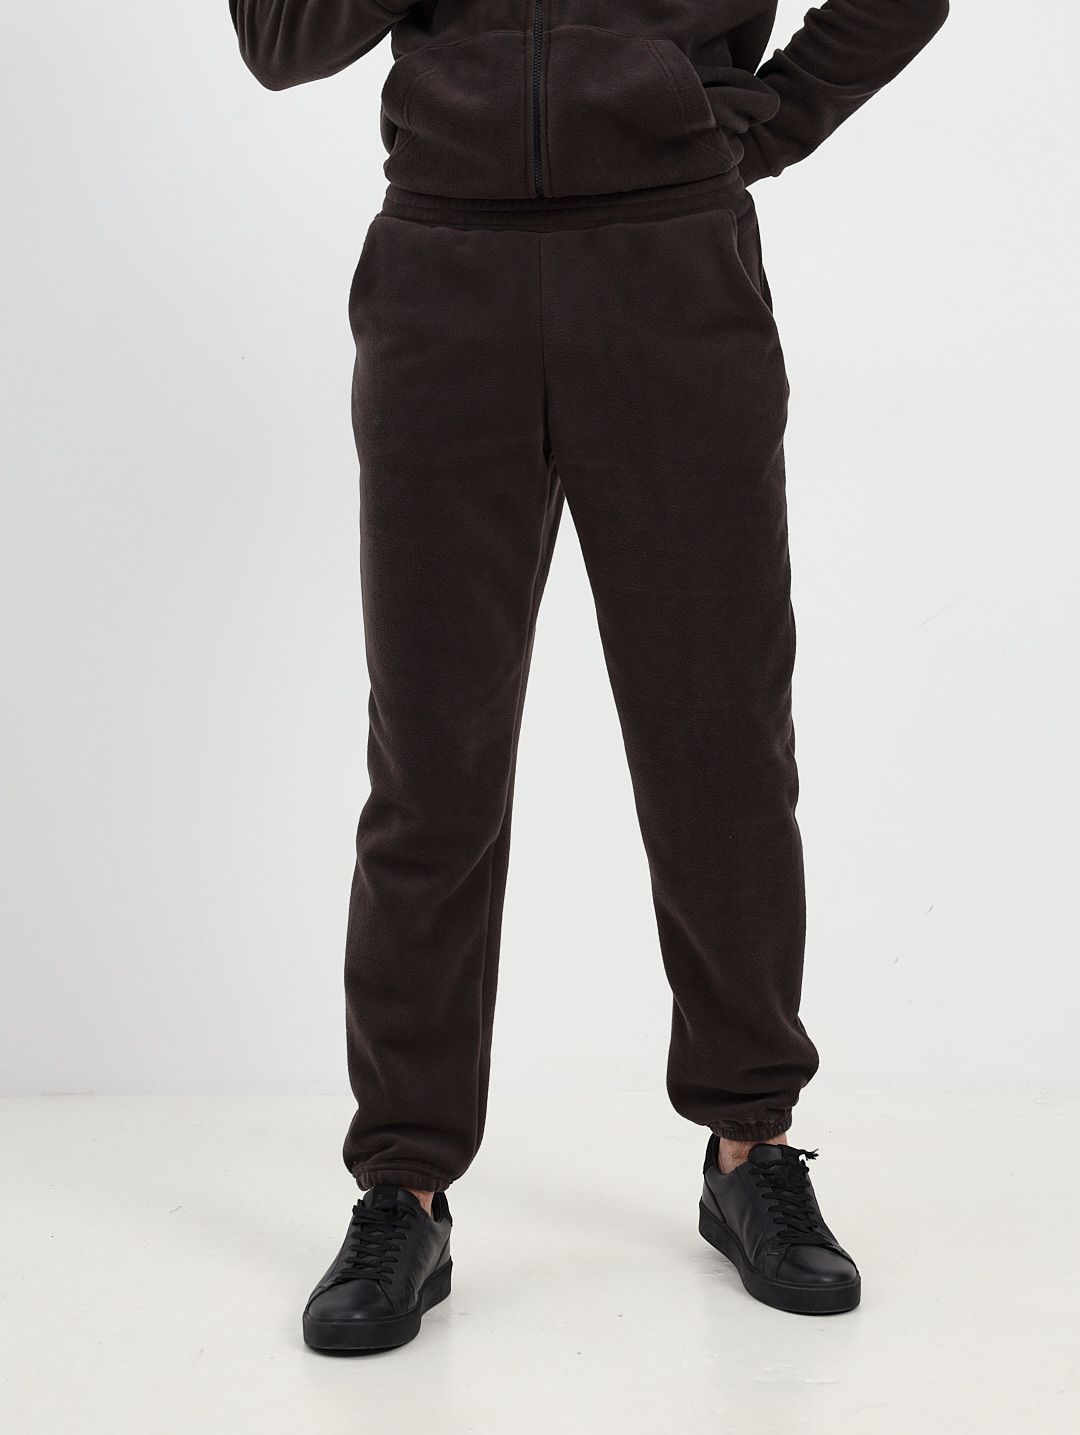 Спортивные брюки мужские MOM №1 MOM-88-3150F коричневые XL